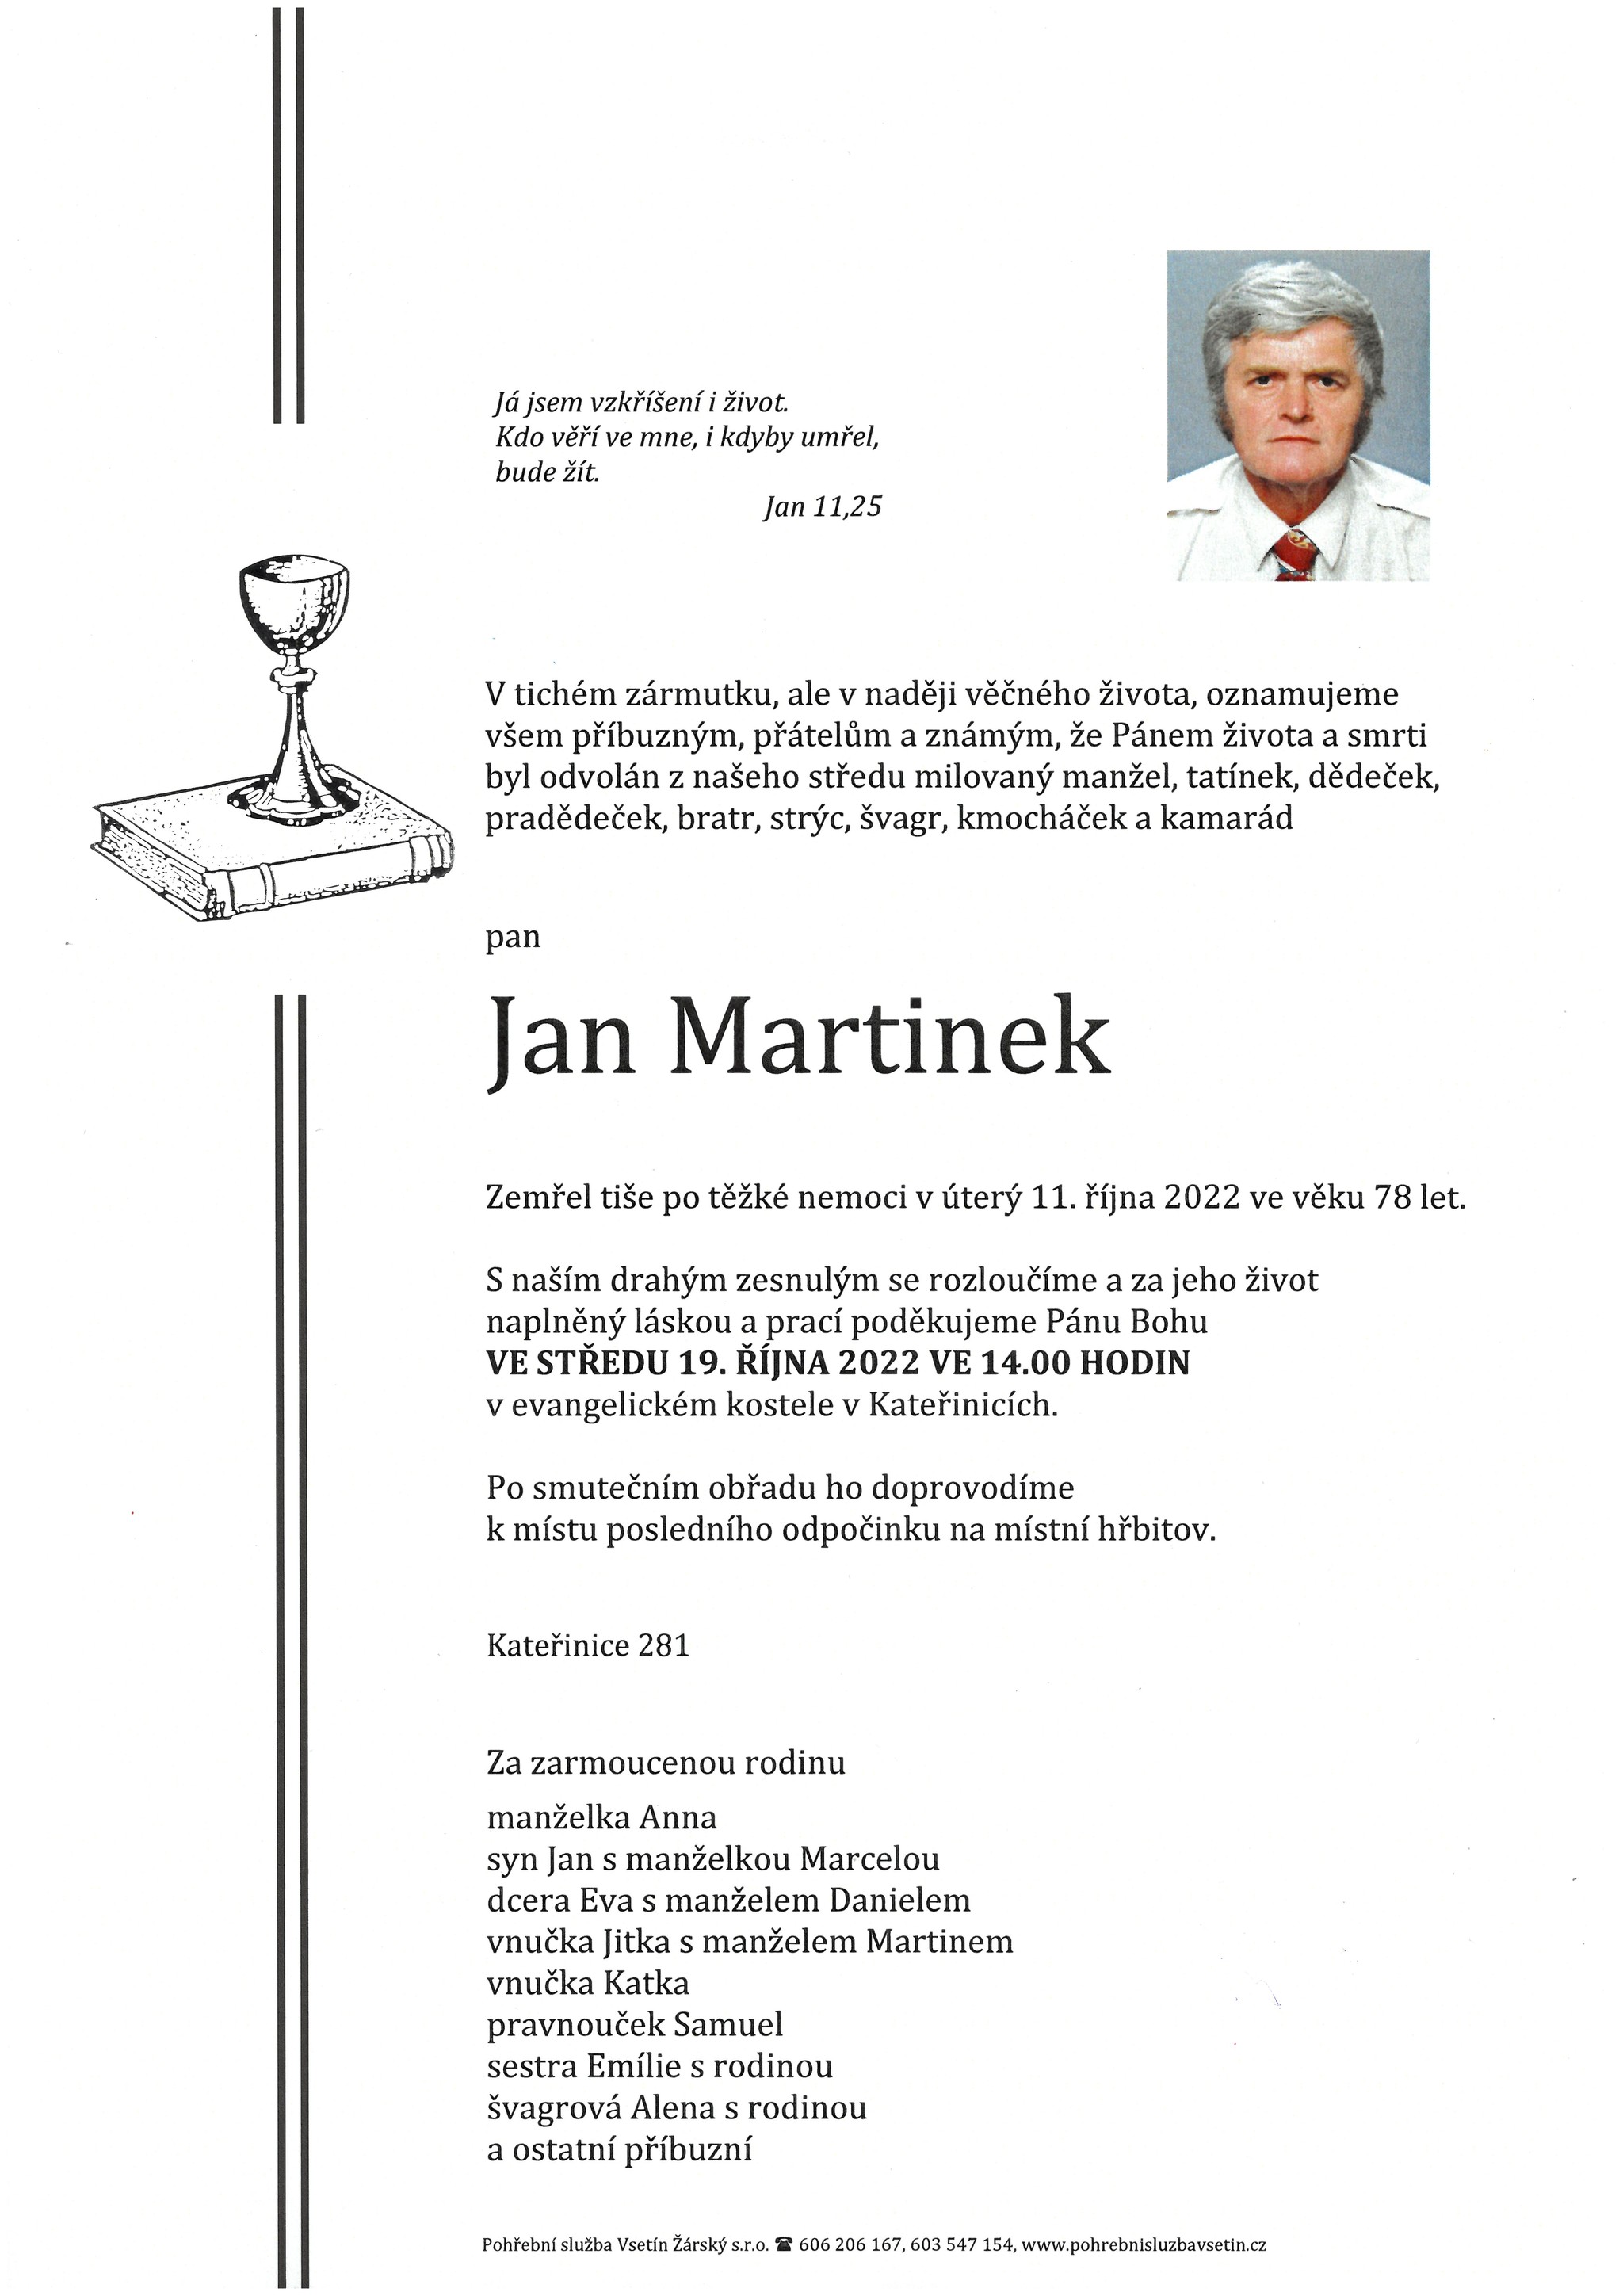 Jan Martinek